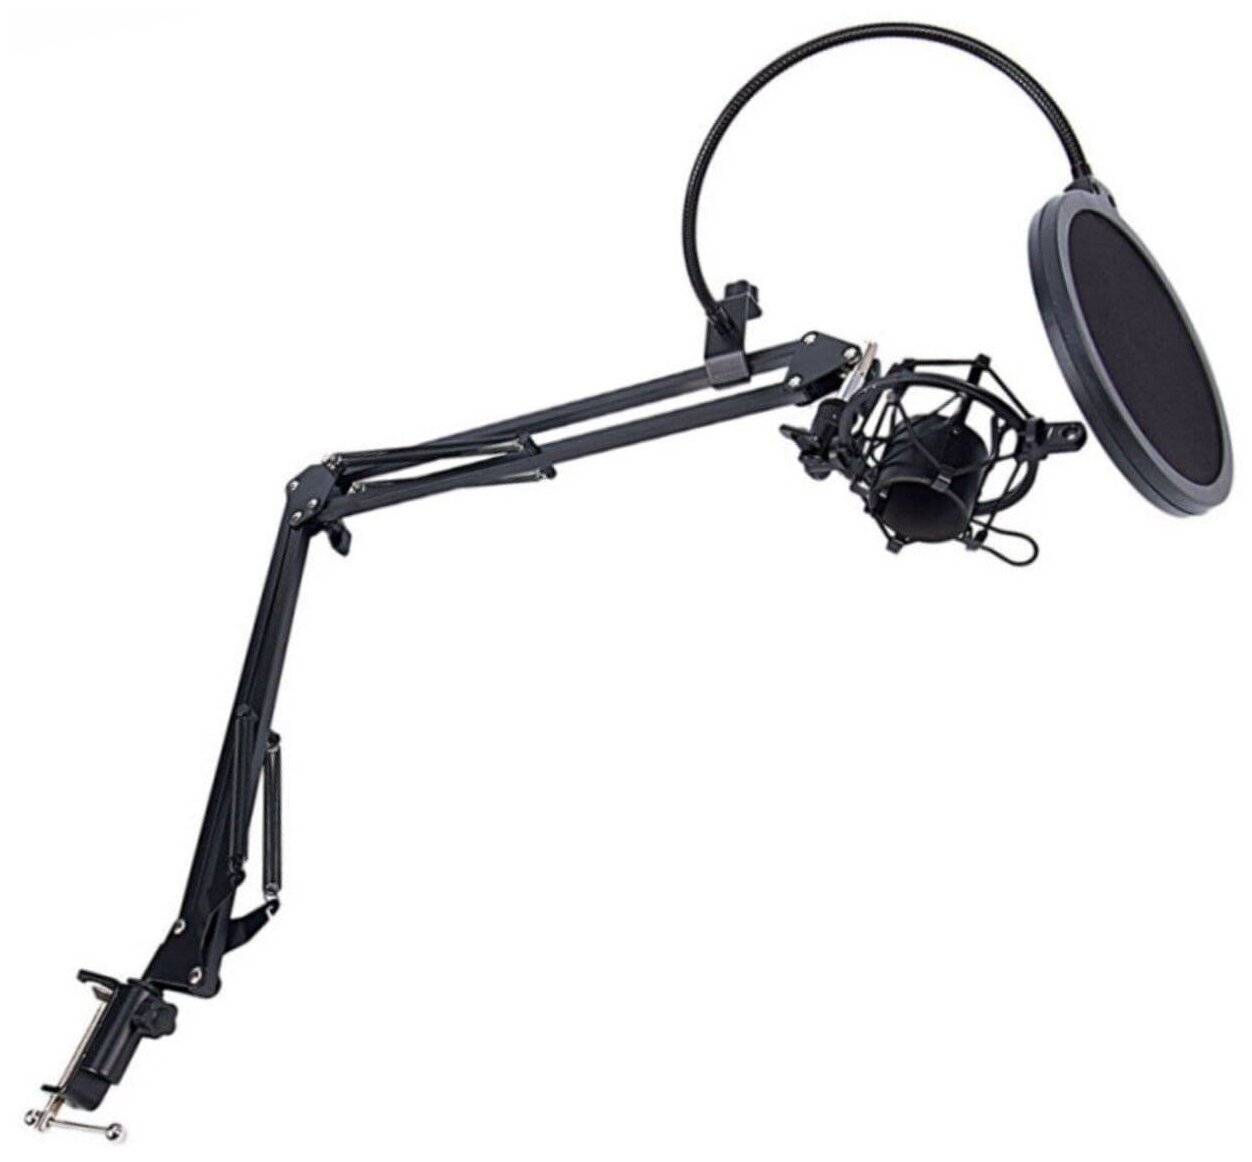 Настольная стойка пантограф ST-3591 для микрофона до 1.6 кг с пауком поп-фильтром держателем кабеля и усиленной струбциной